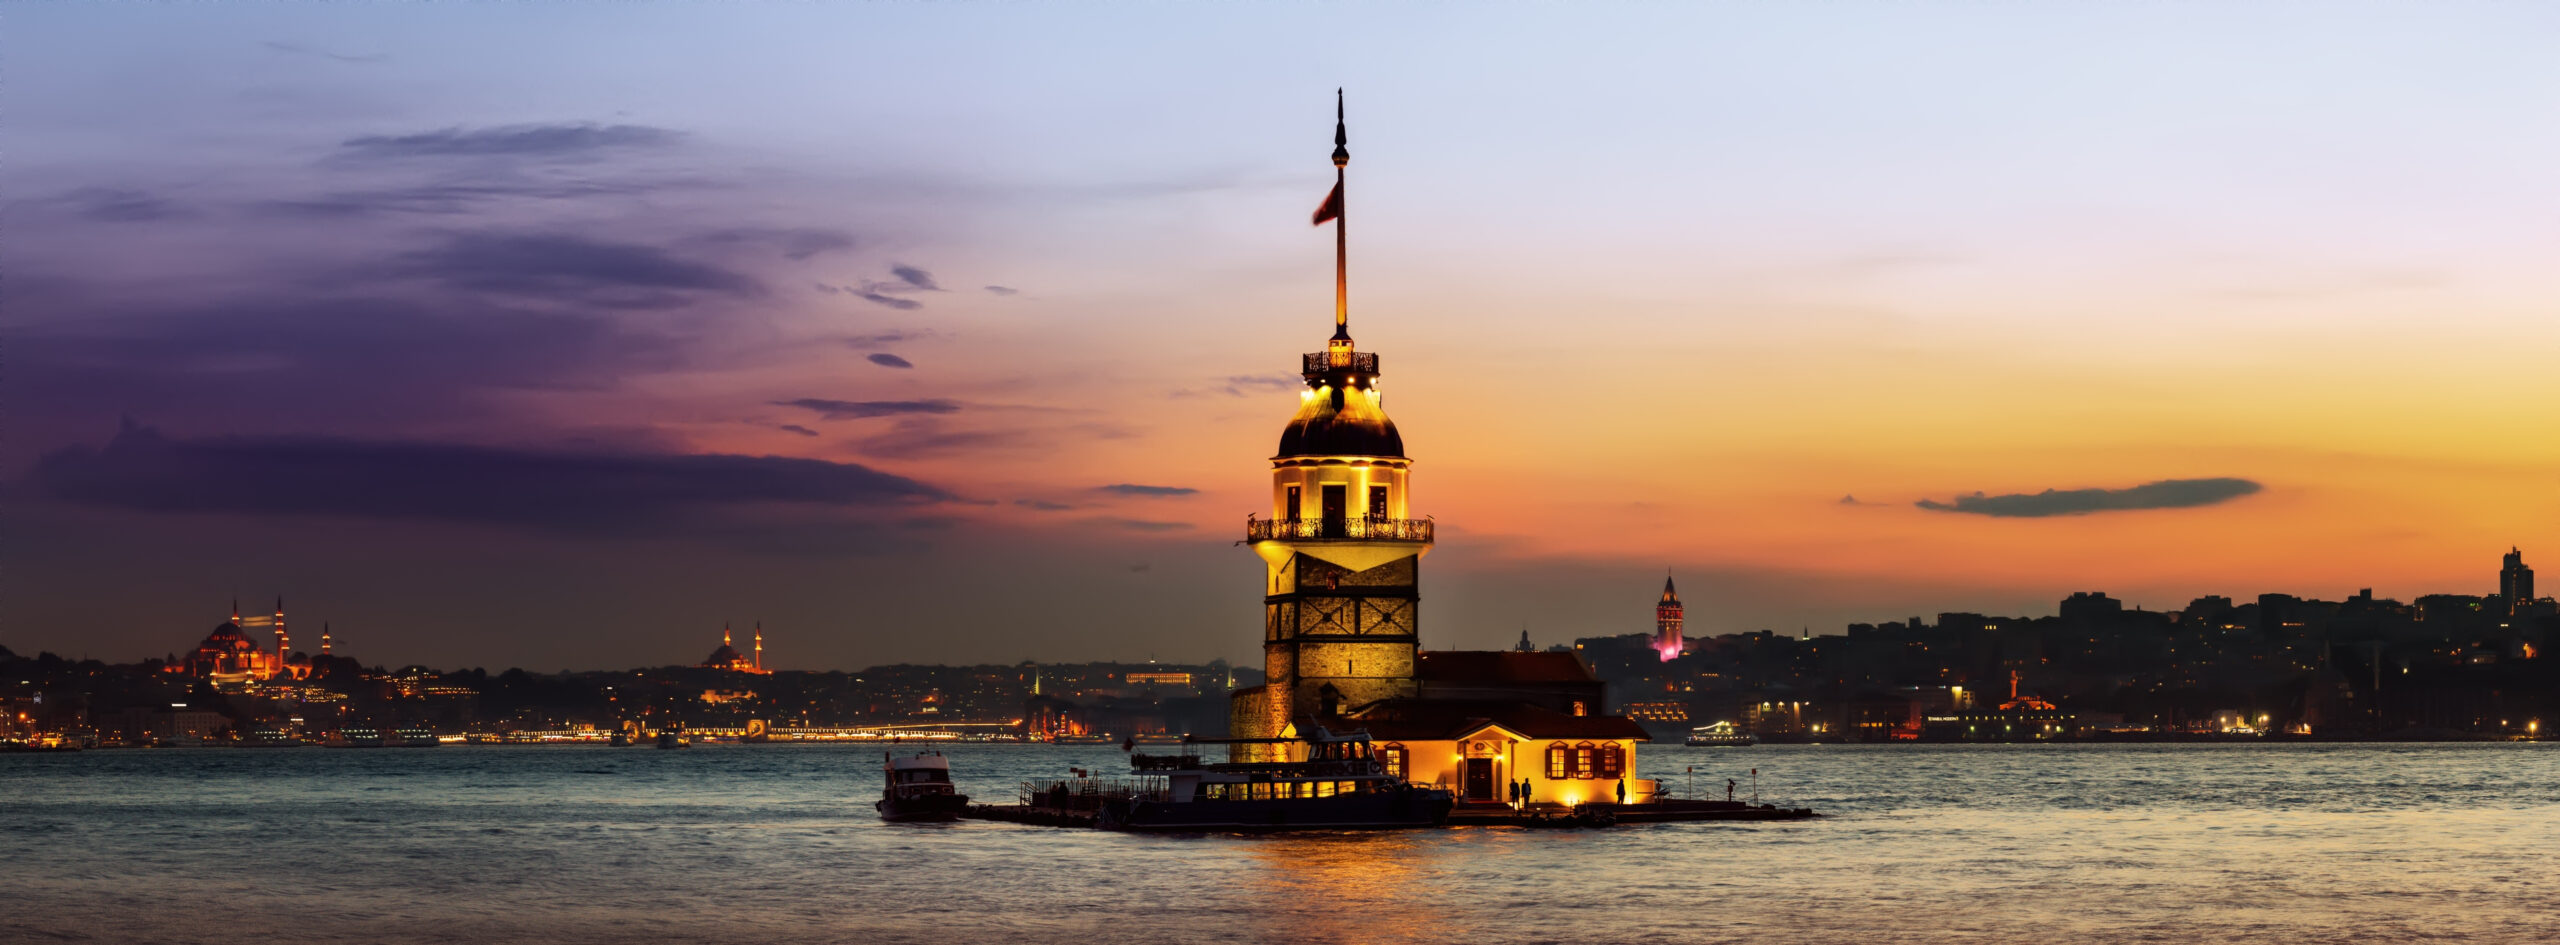 Maiden Tower in Bosforus illuminated at sunset, Istanbul